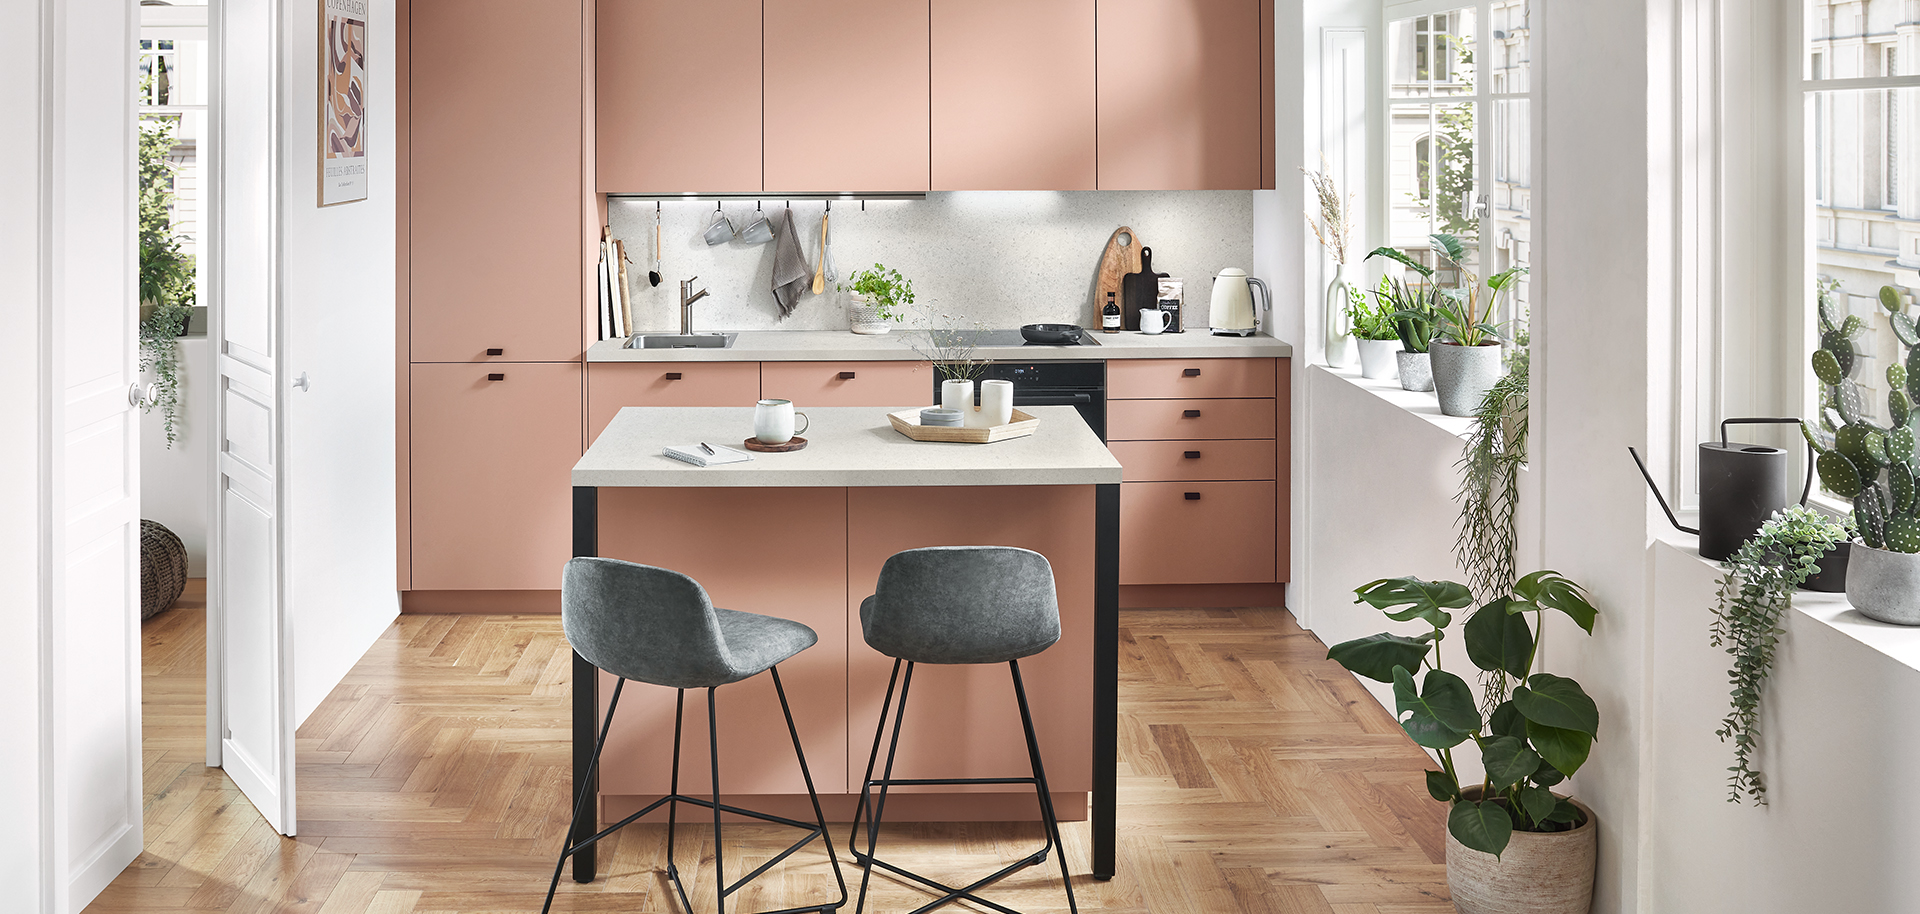 Una cocina moderna y espaciosa con elegantes gabinetes blancos, electrodomésticos de acero inoxidable y un acogedor comedor con sillas grises elegantes y plantas verdes exuberantes.